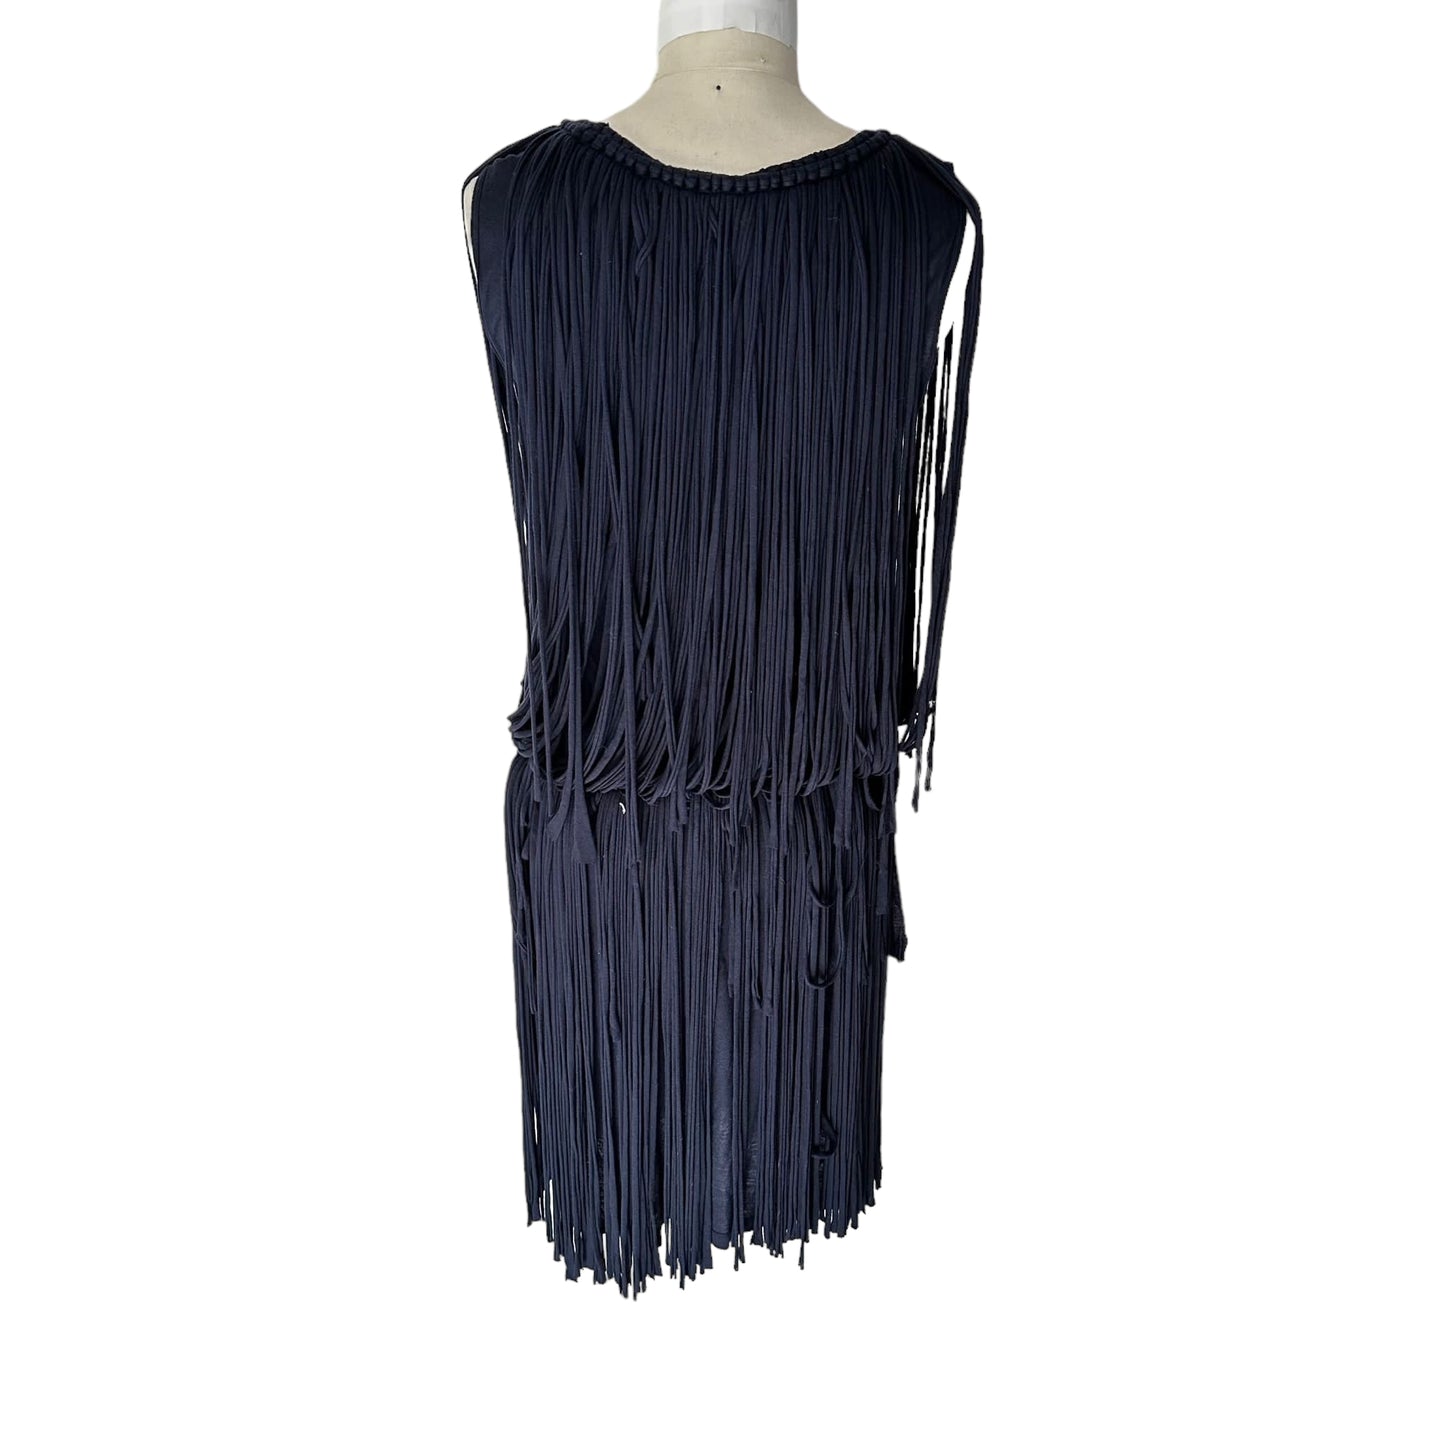 Vintage Fringed Dress - S